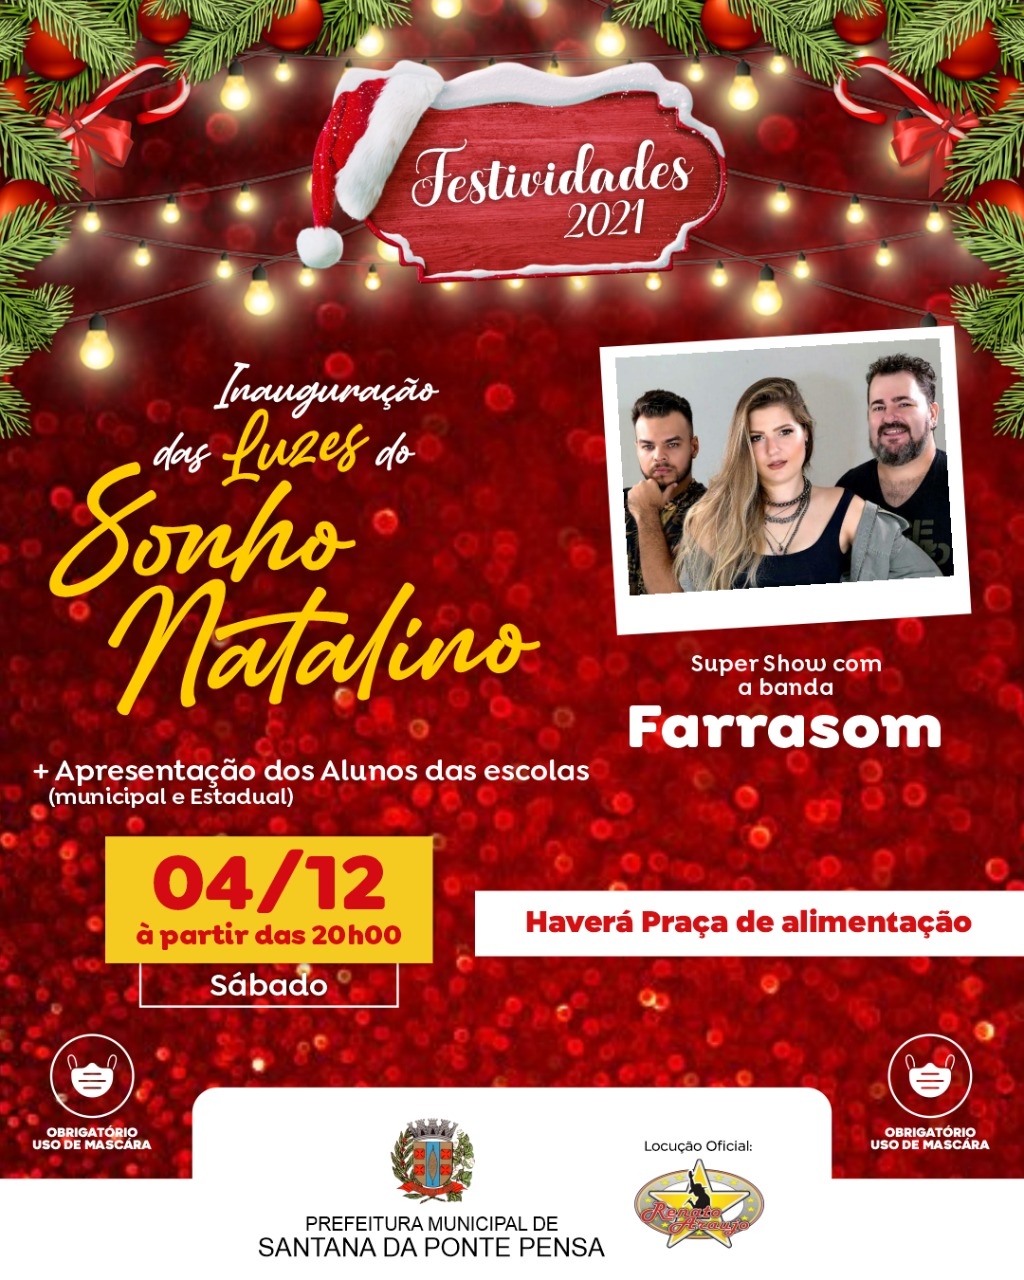 Santana da Ponte Pensa Inaugura suas luzes de Natal neste sábado (04/12)